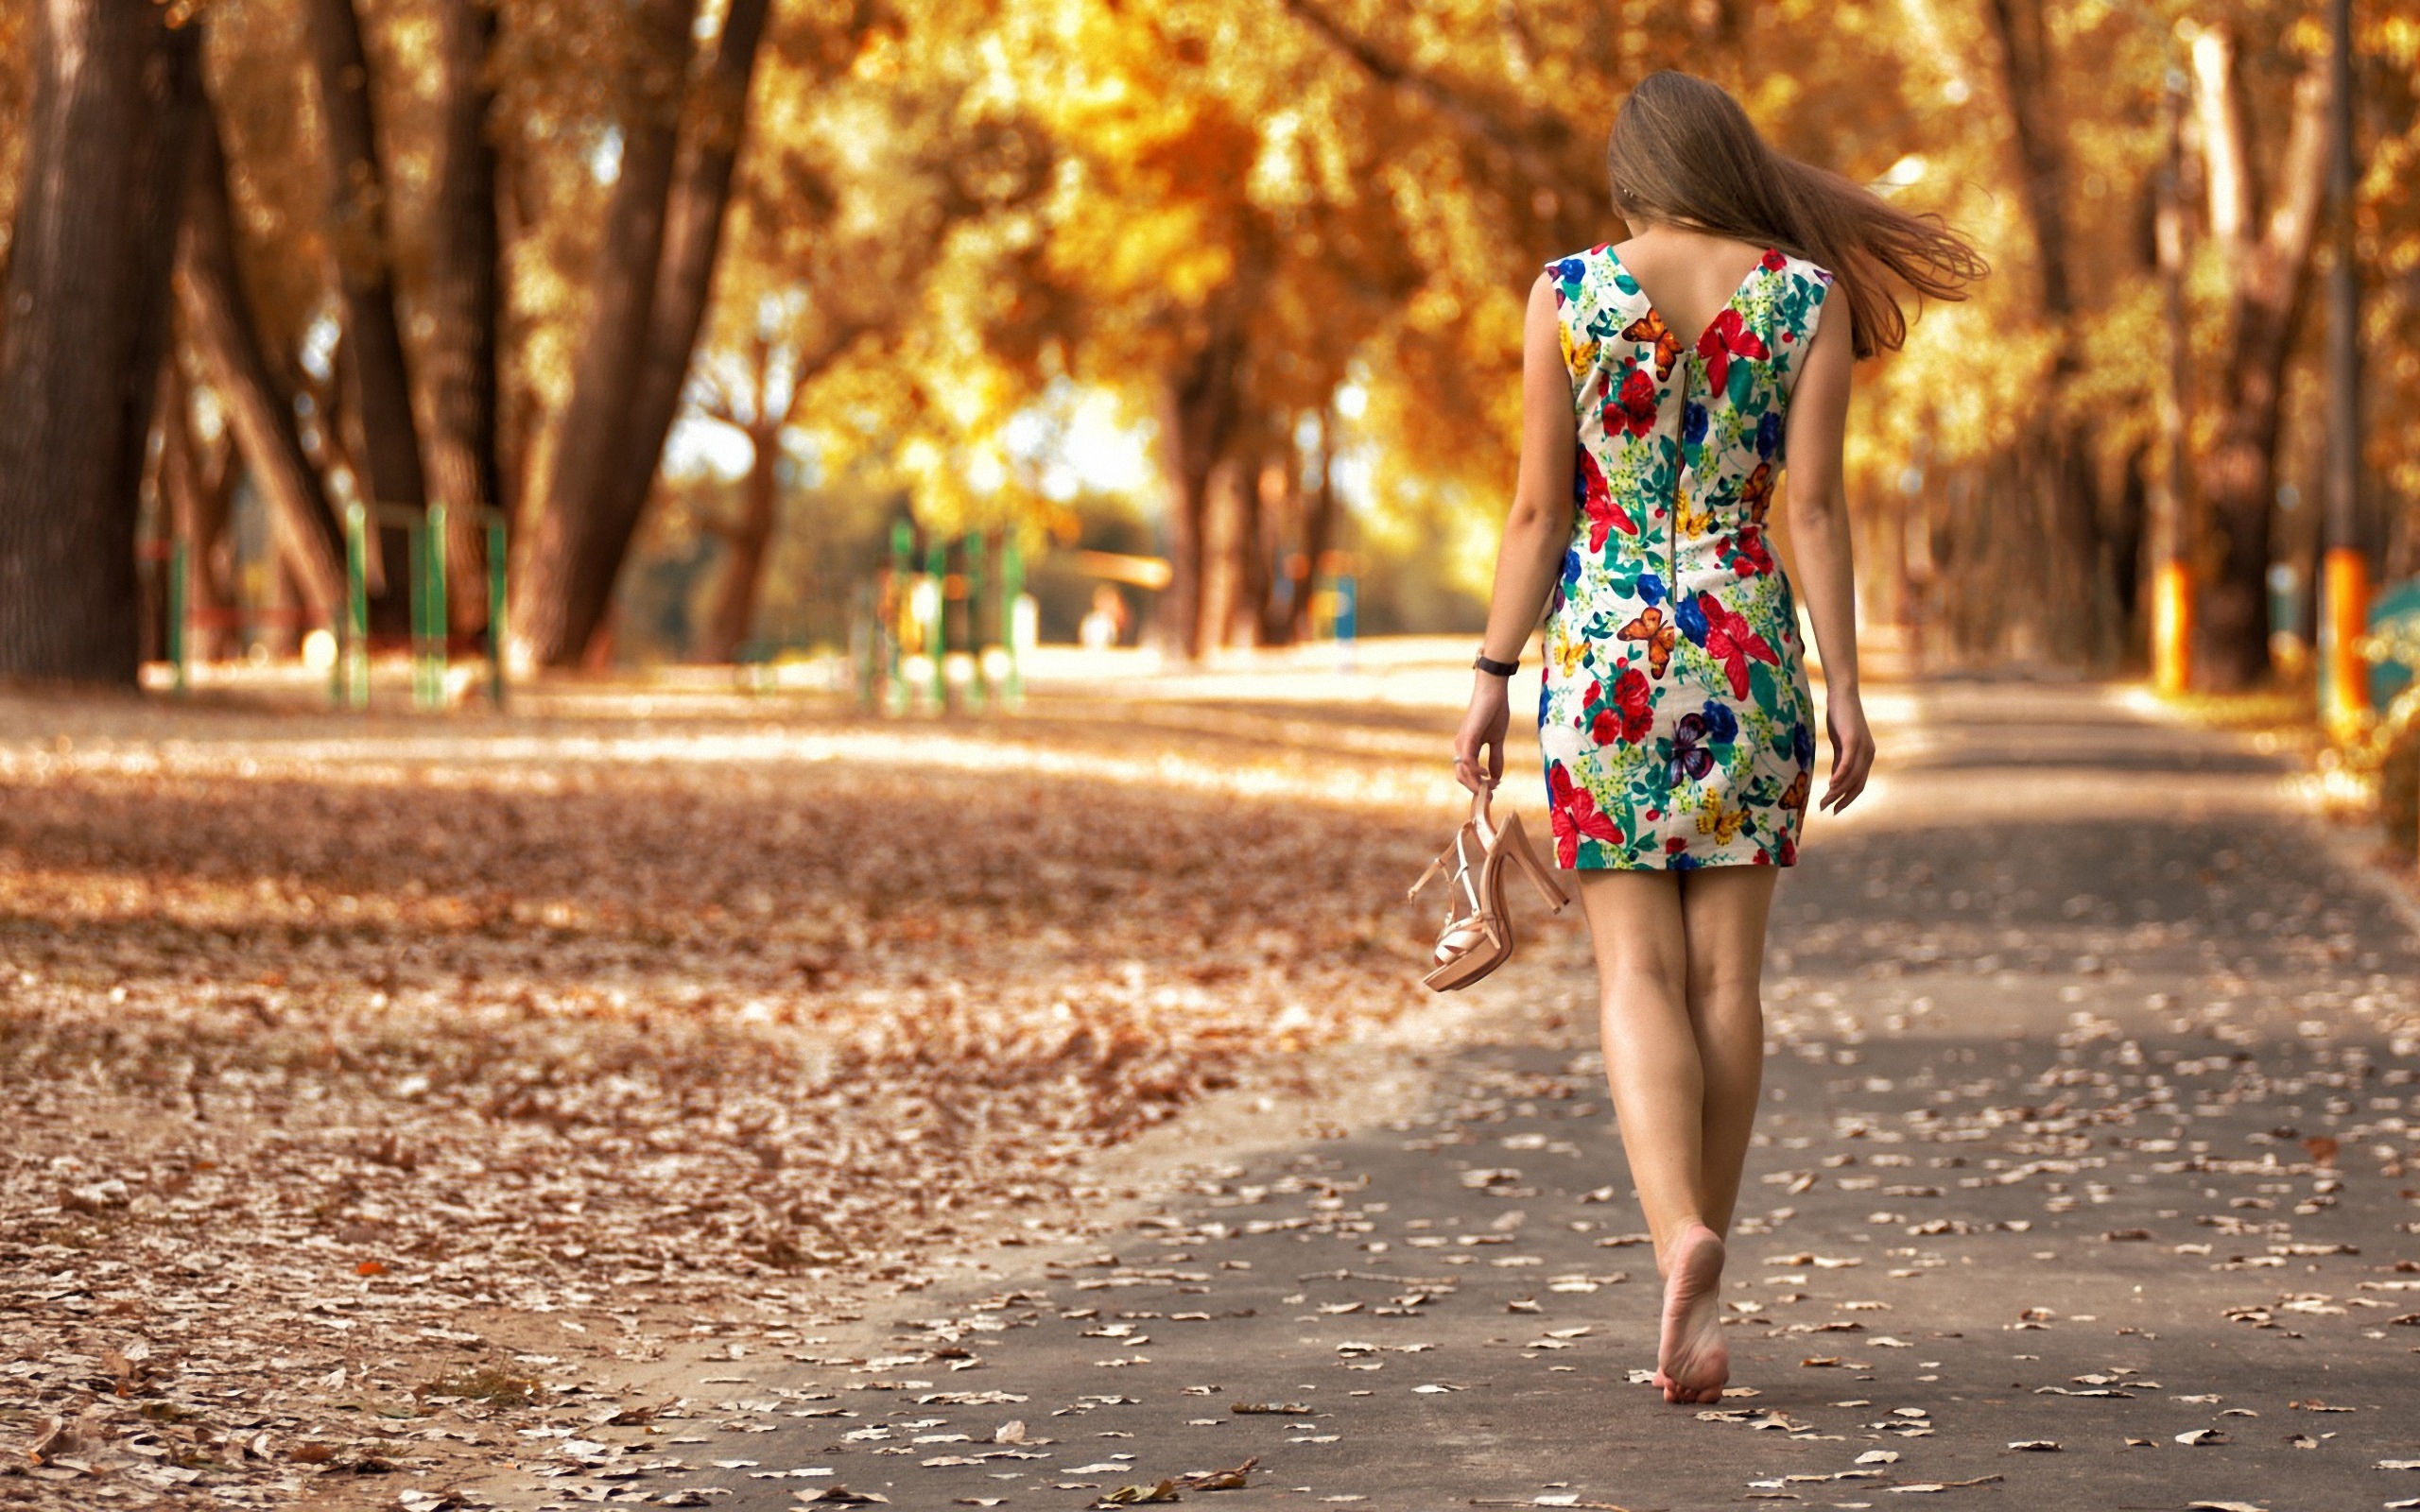 Парк красивая девушка. Фотосессия в парке летом. Девушка в платье летнем. Девушка гуляет в парке.